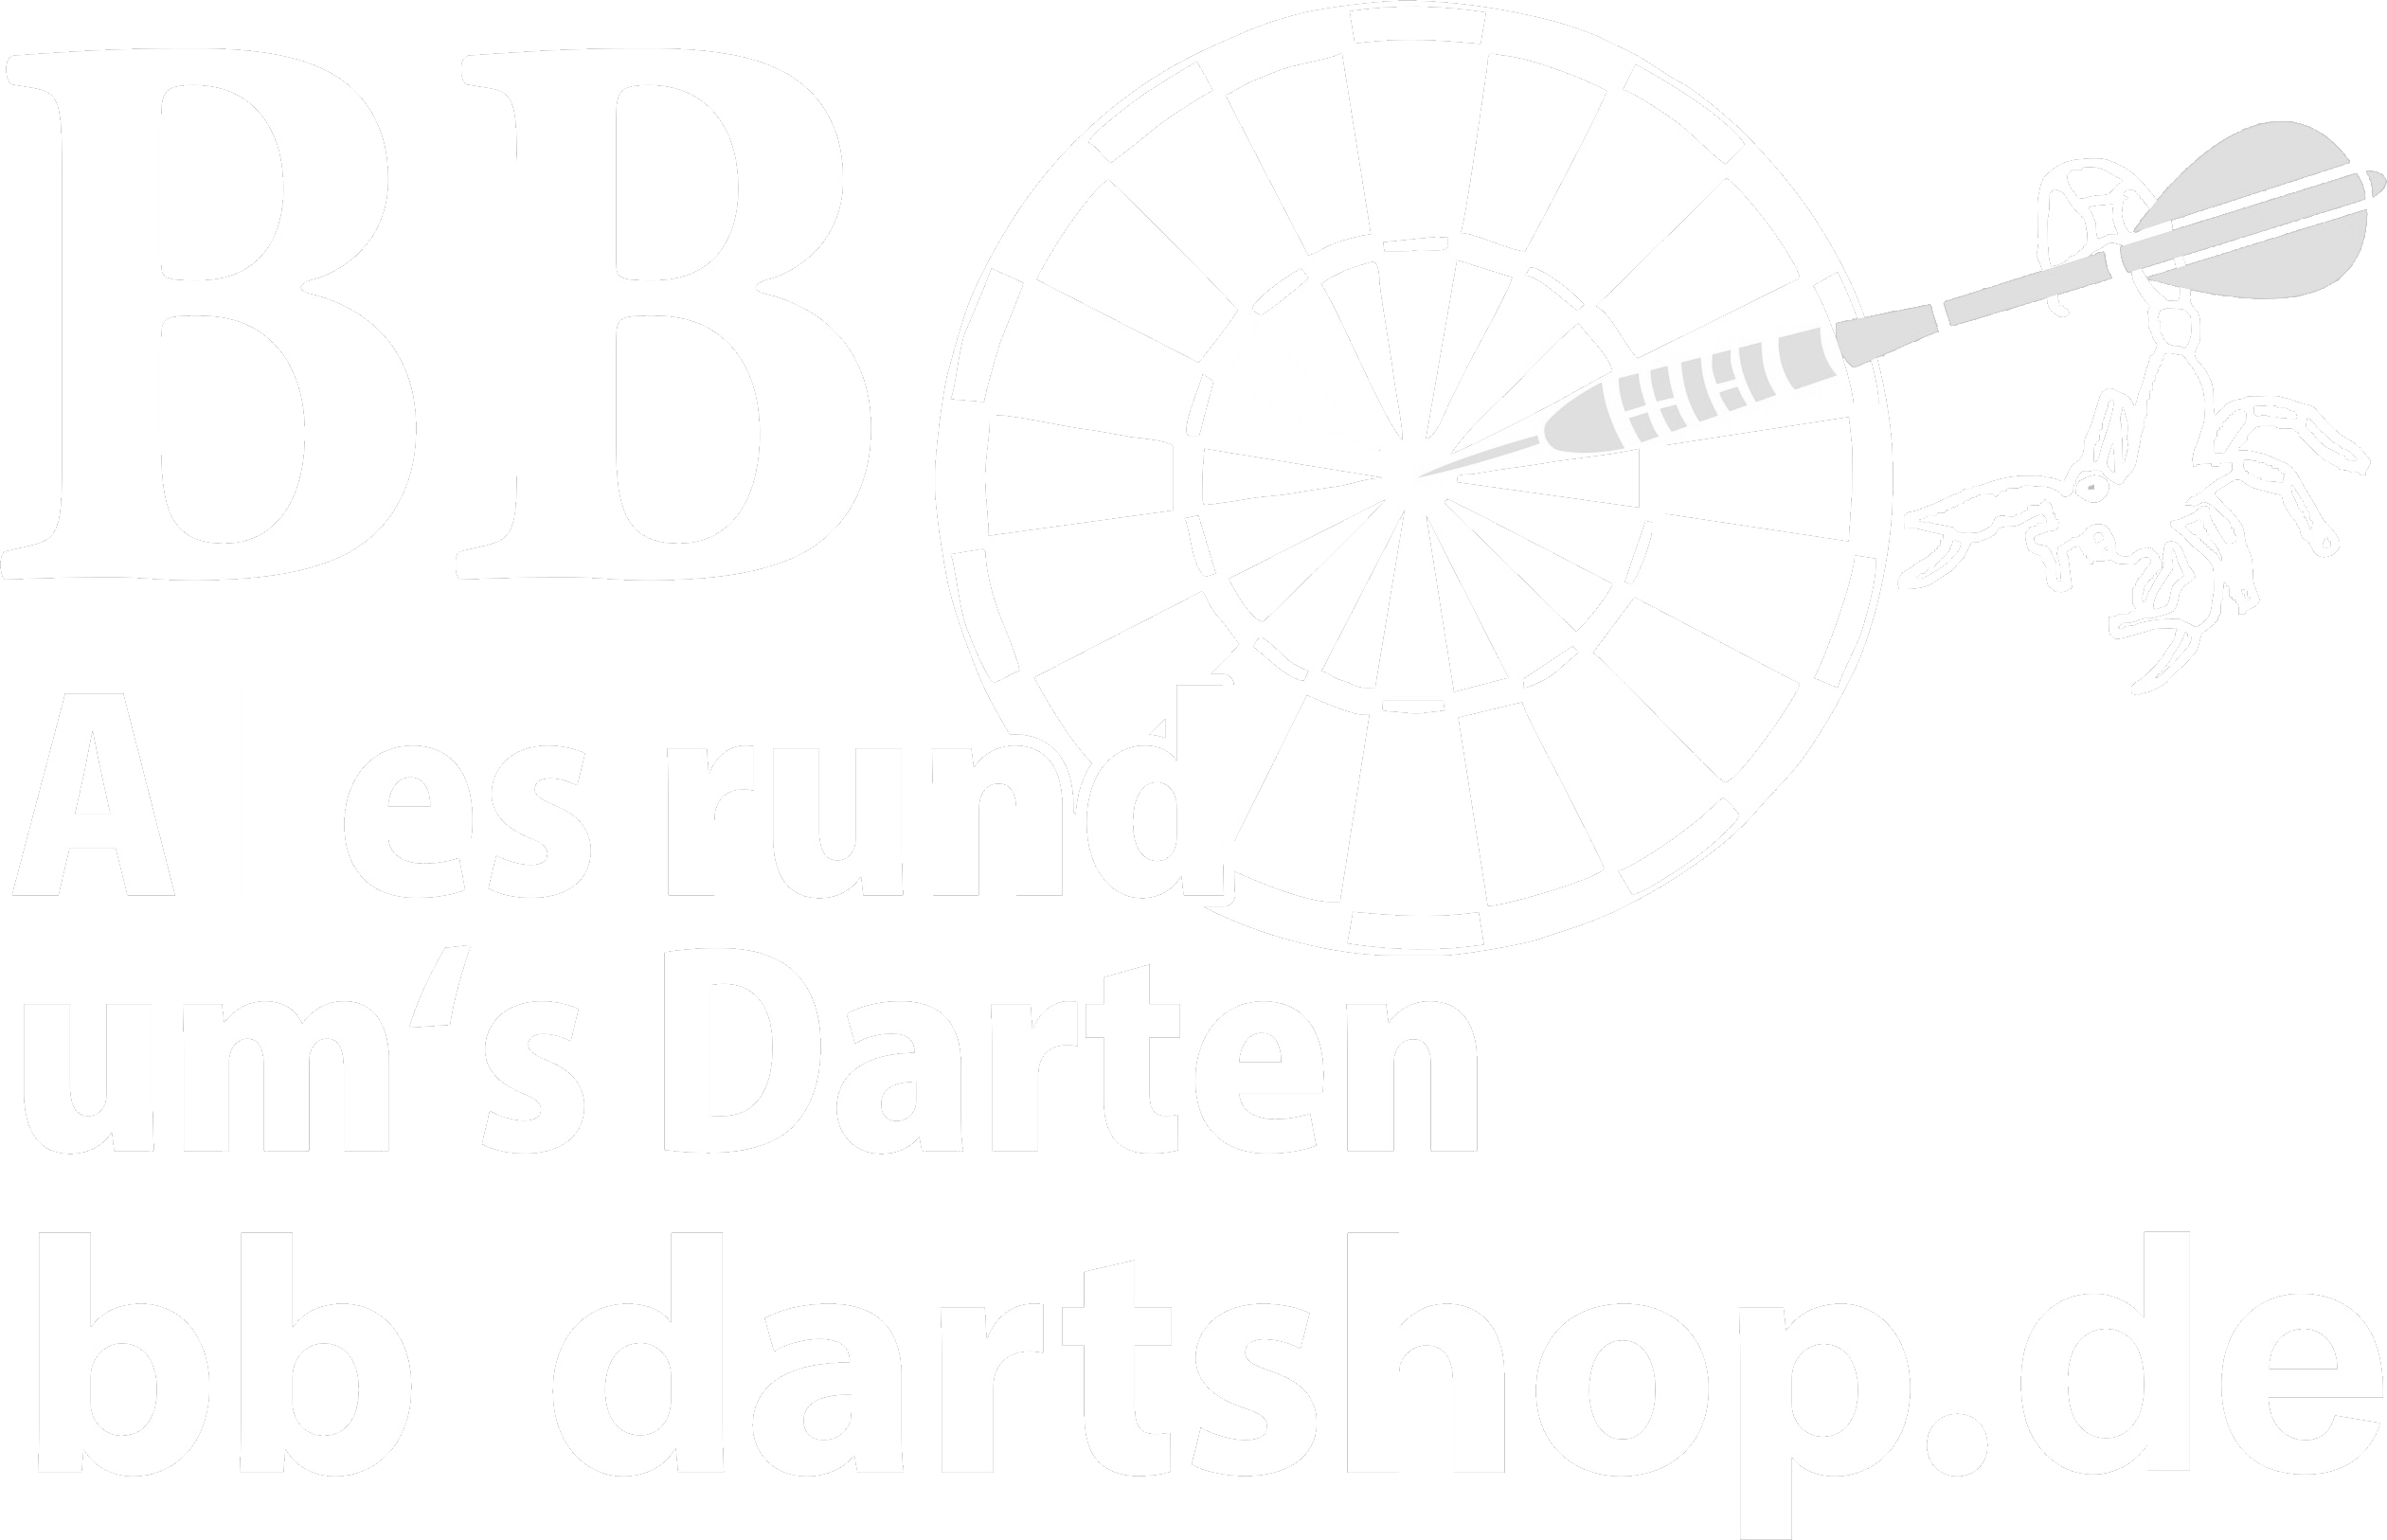 
bb-dartshop-emden.png